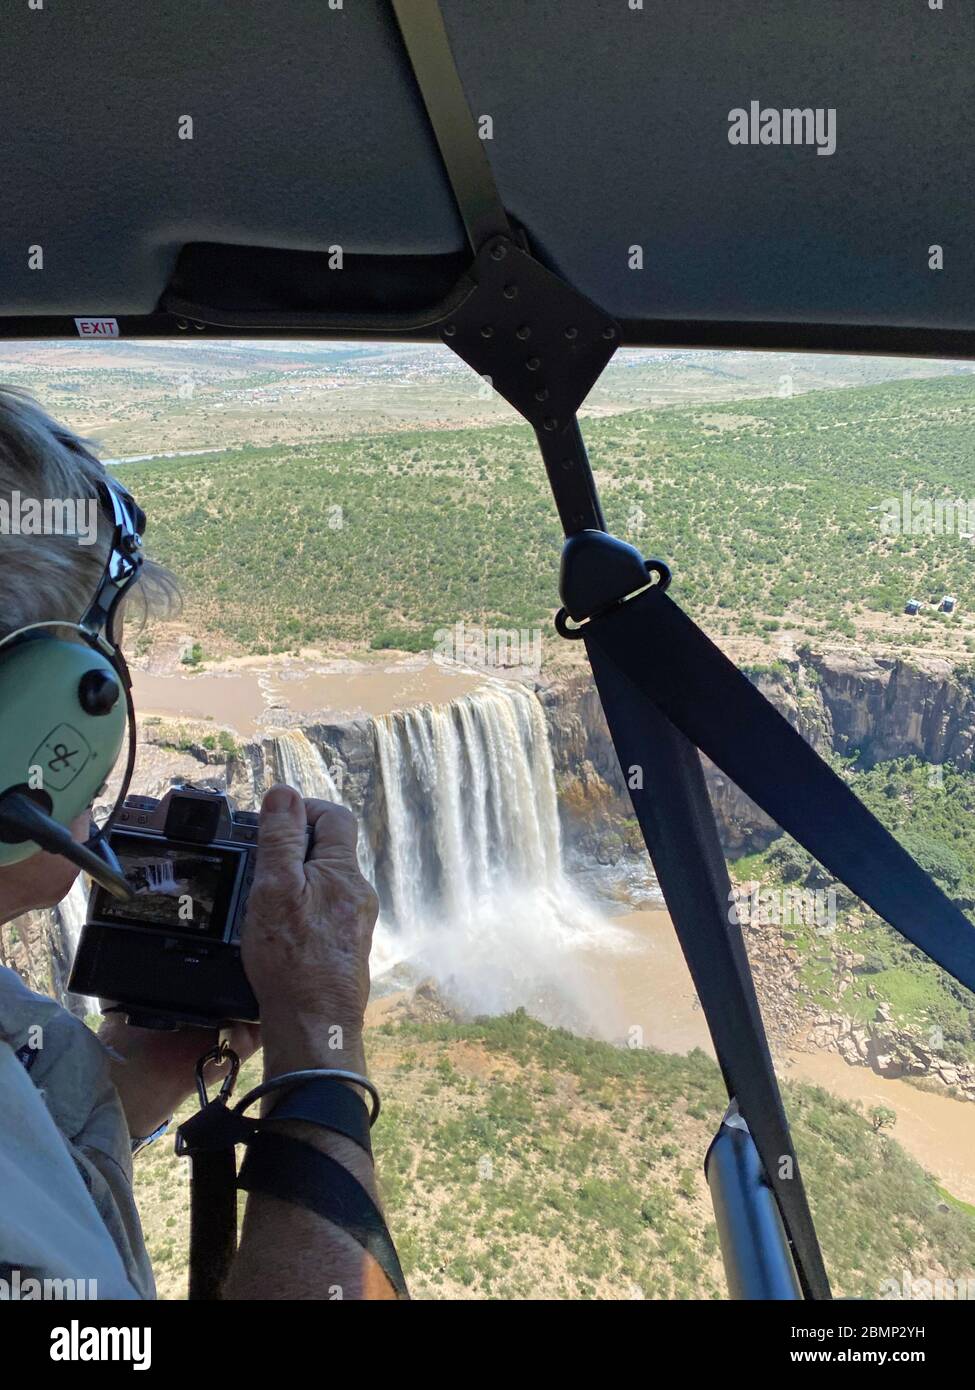 Lors d'un vol touristique, un passager d'un hélicoptère prend des photos de la grande cascade et des merveilles à la quantité d'eau qui descend. Banque D'Images